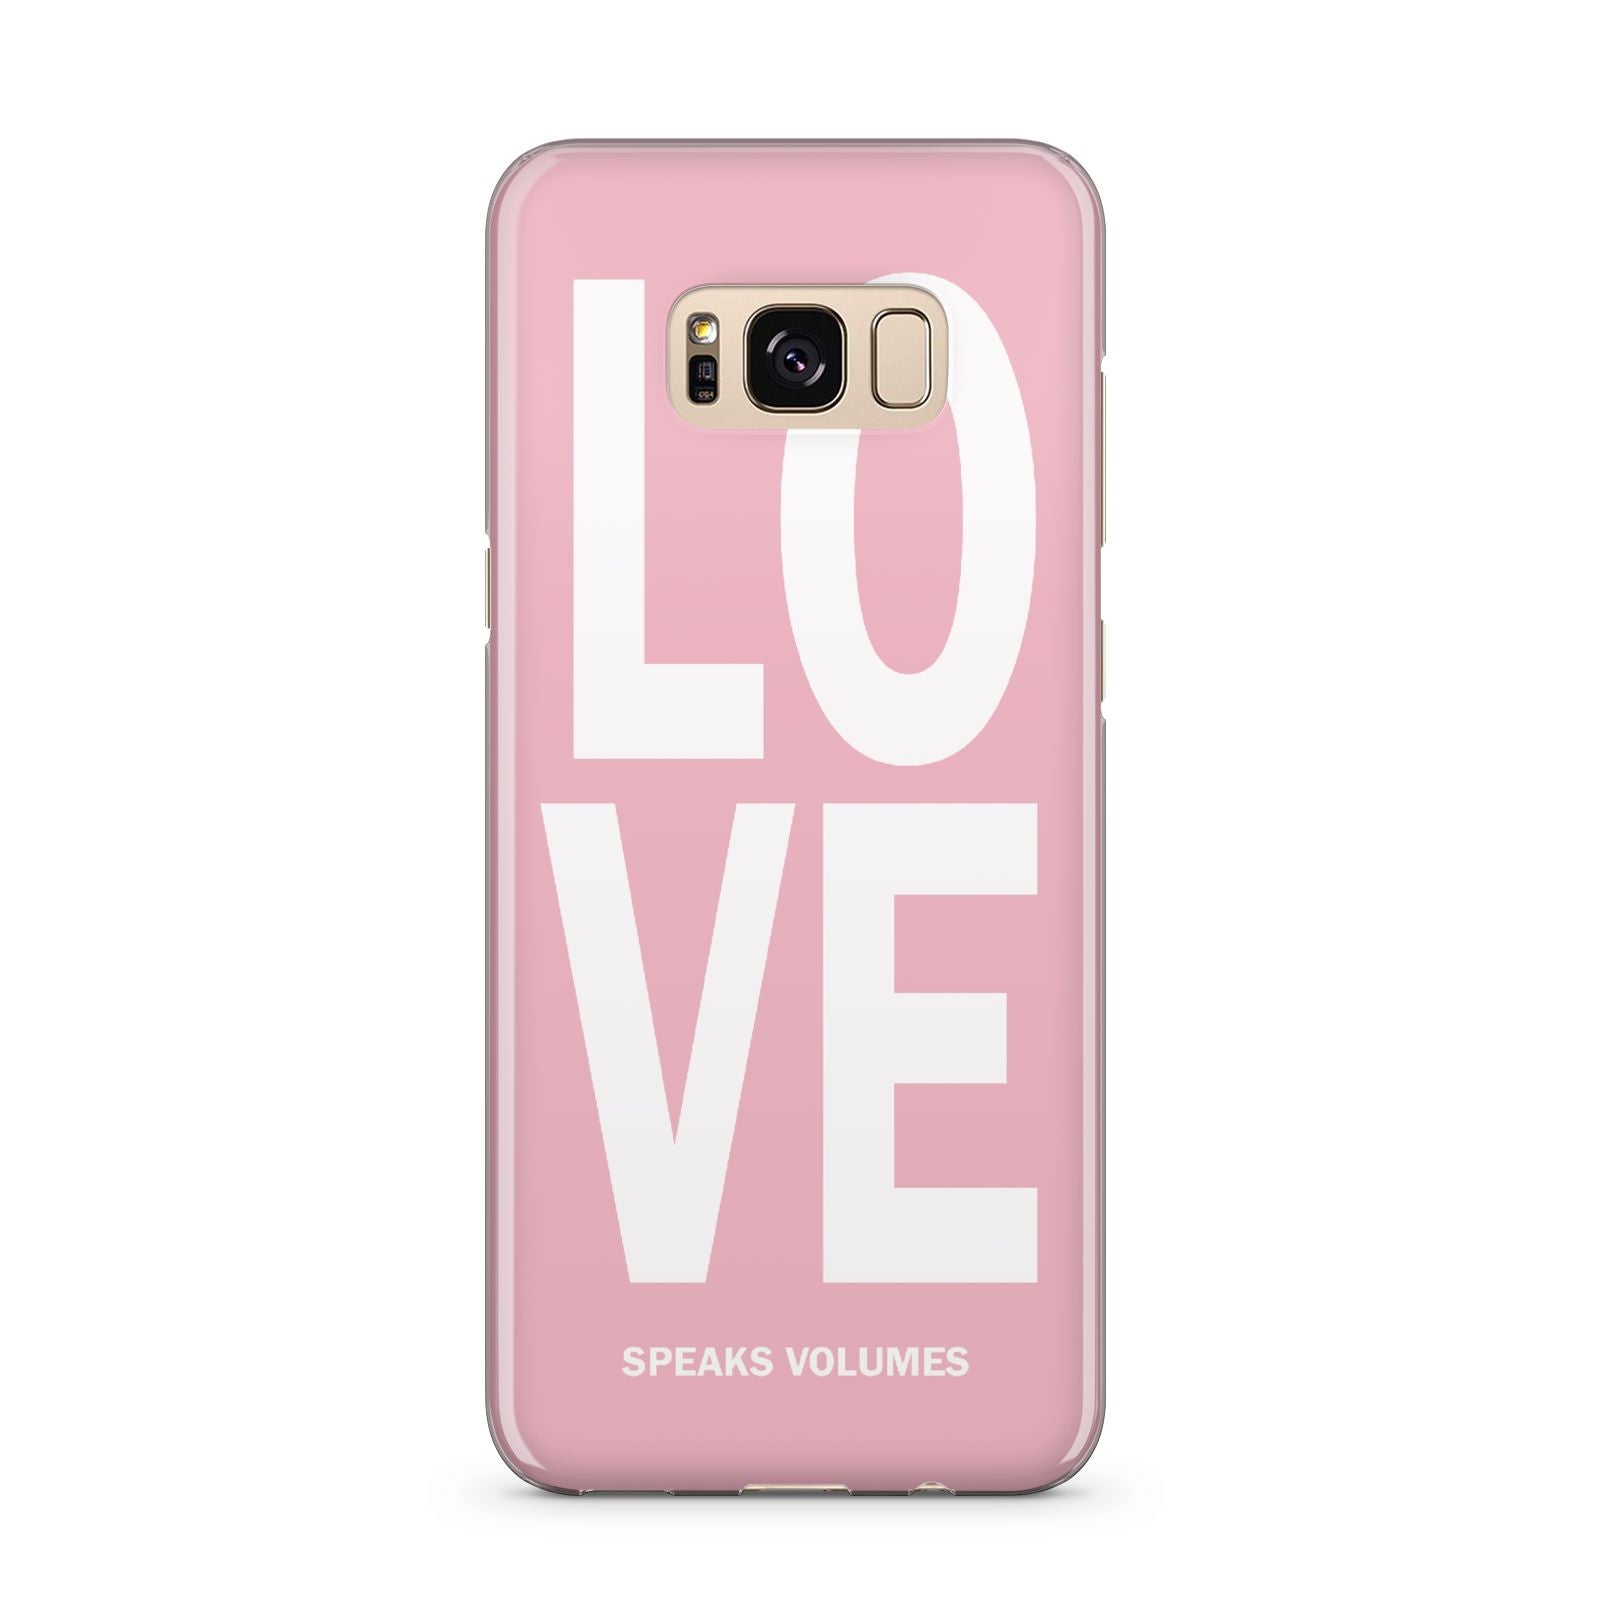 Valentines Love Speaks Volumes Samsung Galaxy S8 Plus Case